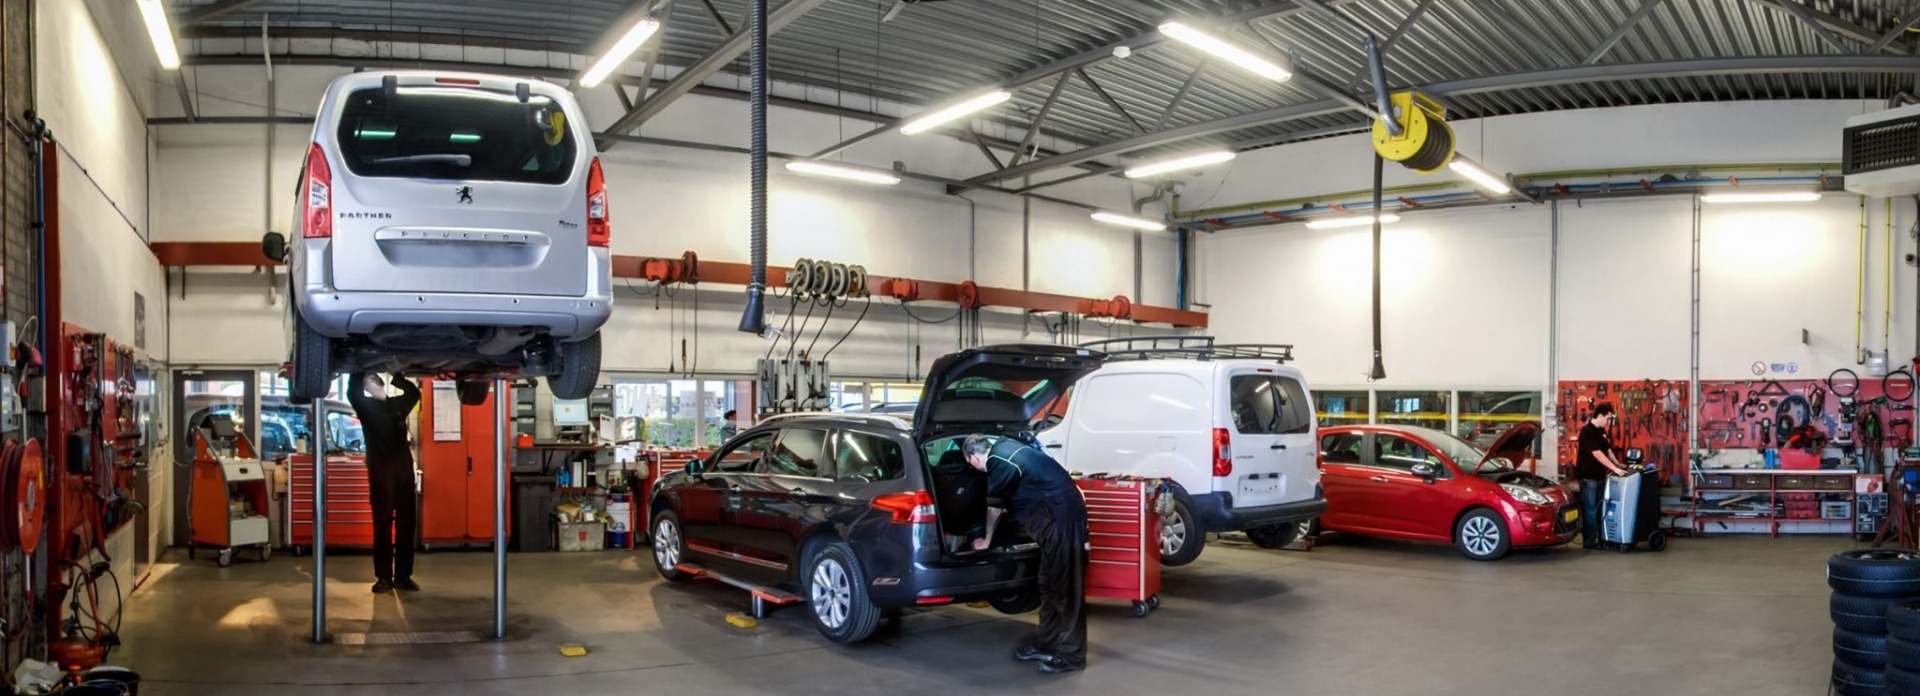 Fully equipped workshop at Car dealership Bart Ebben for Citroën Peugeot Renault